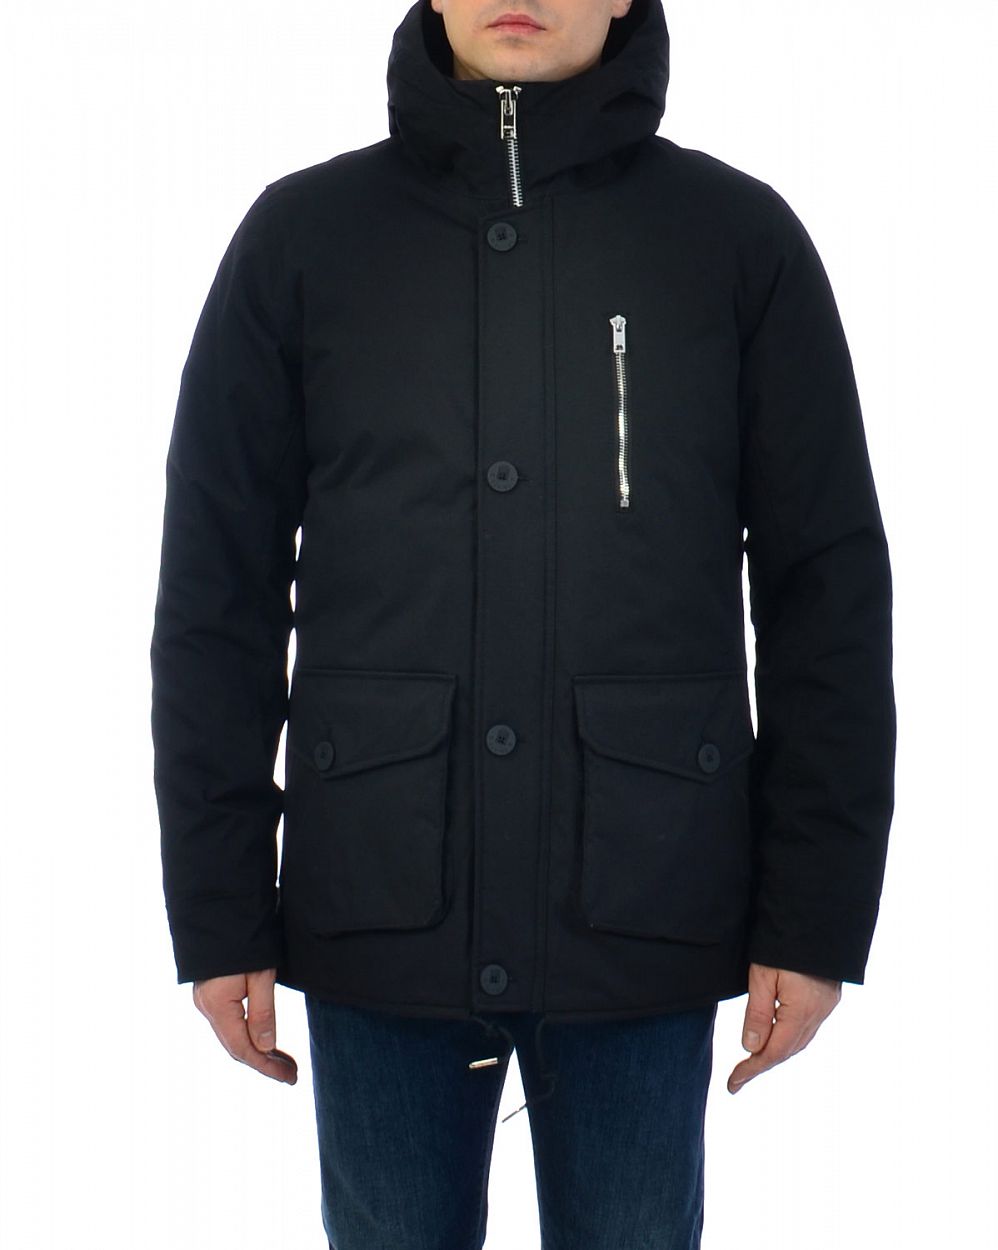 Куртка мужская зимняя водоотталкивающая Швеция Elvine Hammond Black отзывы